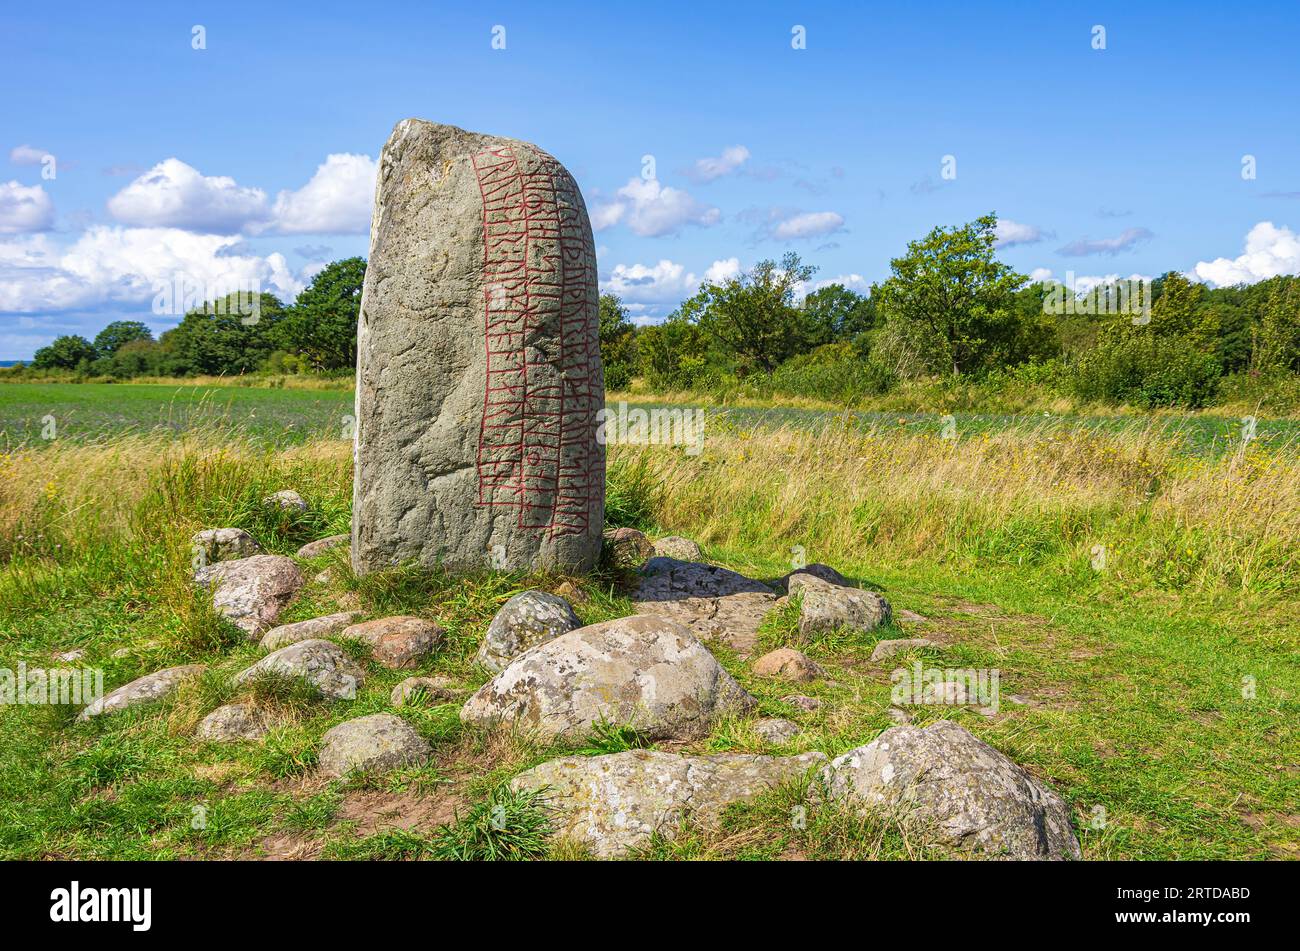 Ancienne pierre de Karlevi, également appelée pierre de Karlevi, à l'extérieur du village de Färjestaden, île de Öland, comté de Kalmar, Suède. Banque D'Images